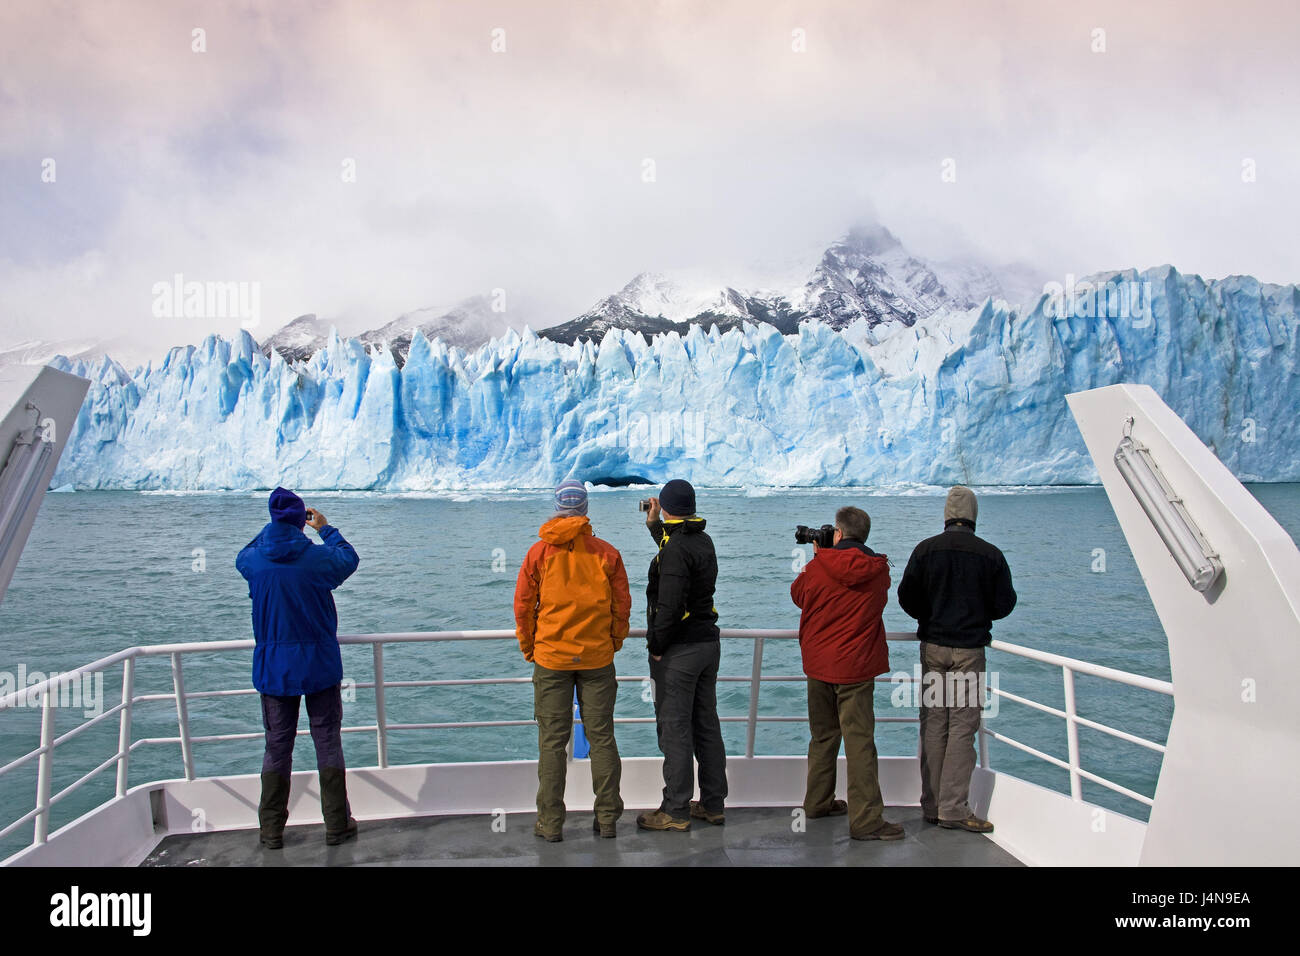 Argentina, Patagonia, Lago Argentino, Glaciar Perito Moreno, scarp, boat, tourist, back view, no model release, Stock Photo